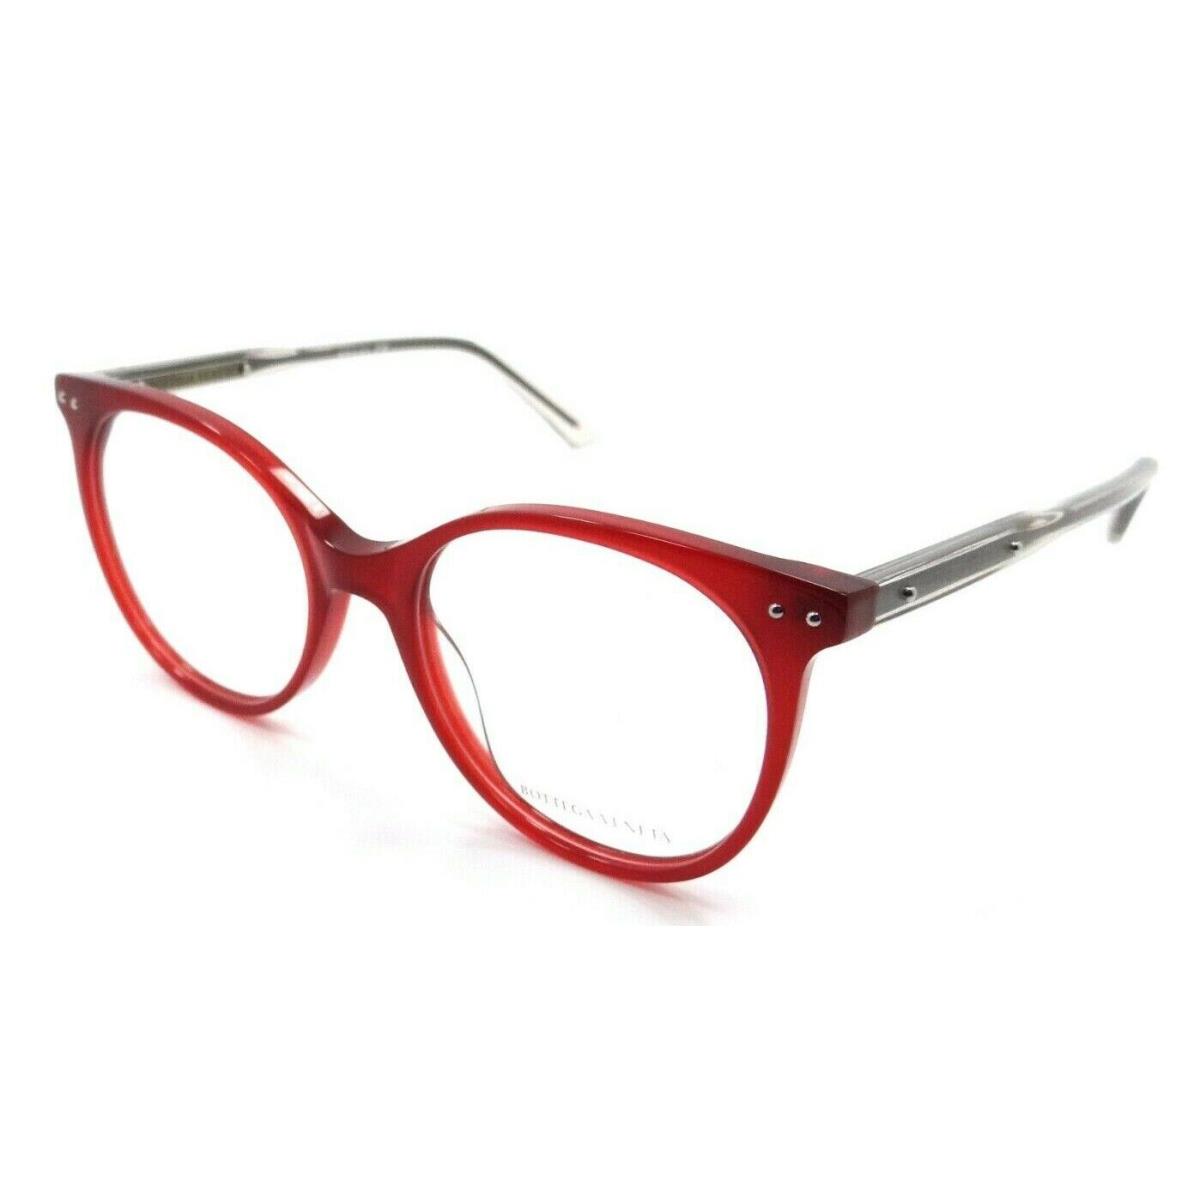 Bottega Veneta Eyeglasses Frames BV0081O 003 50-18-145 Red / Pink Made in Italy